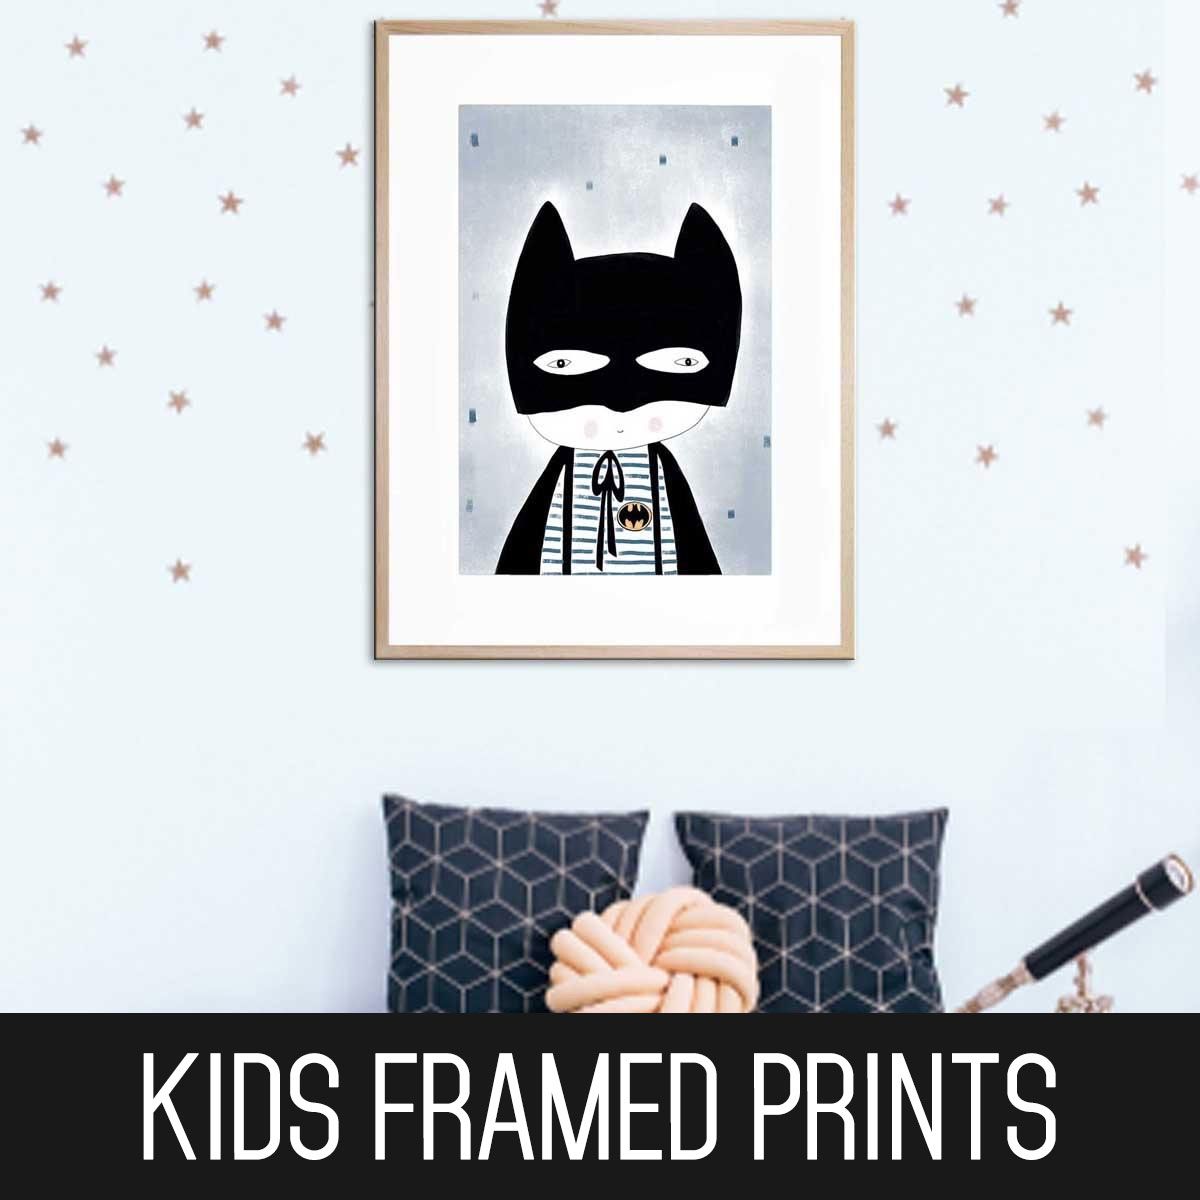 Childrens Framed Prints